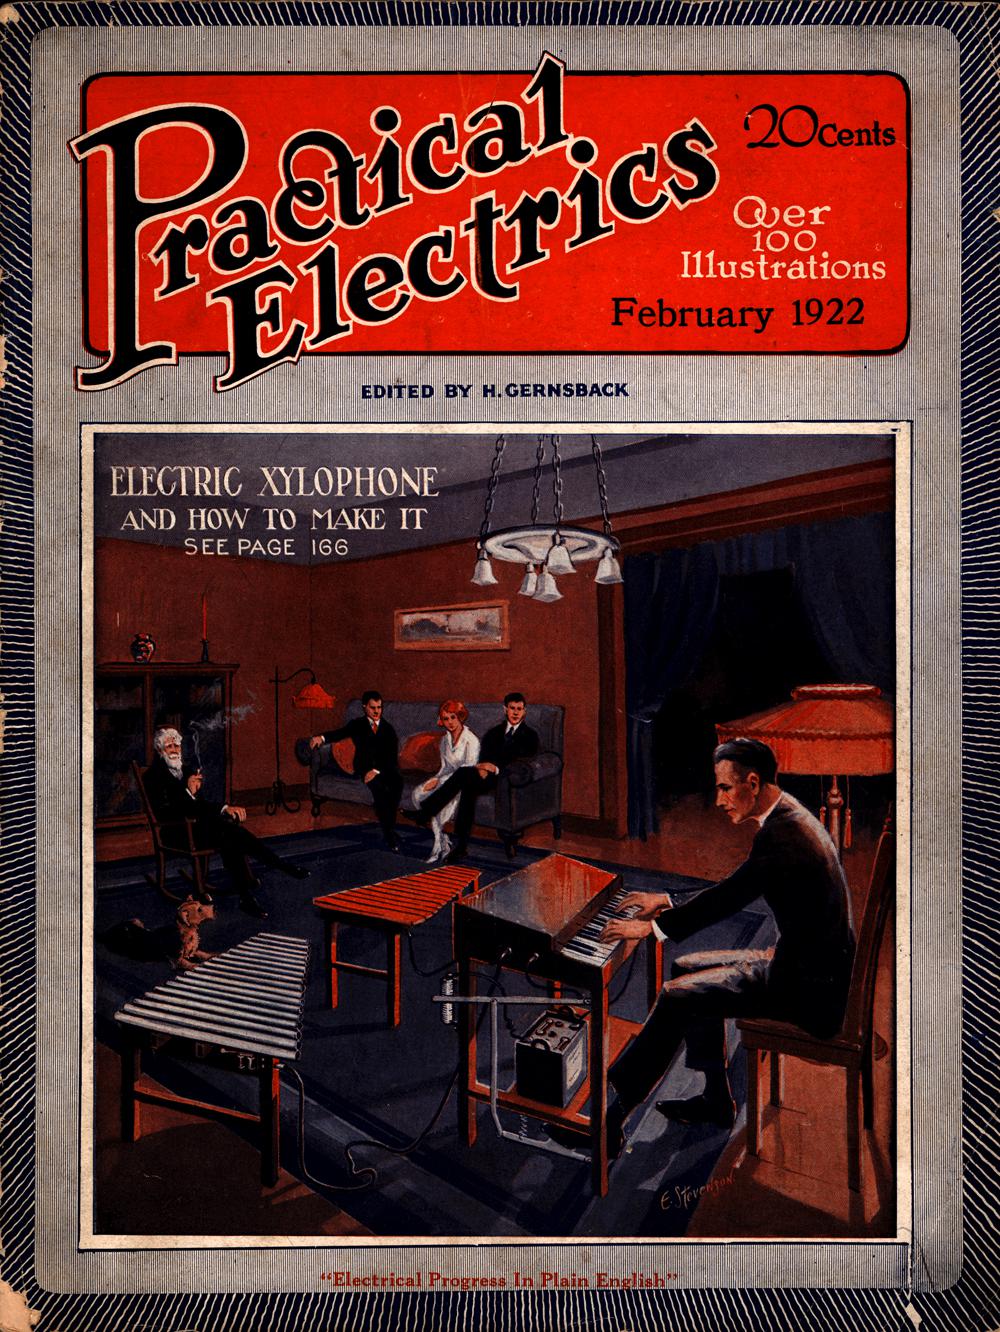 1922 - Practical electrics - Vol. 10, No. 4